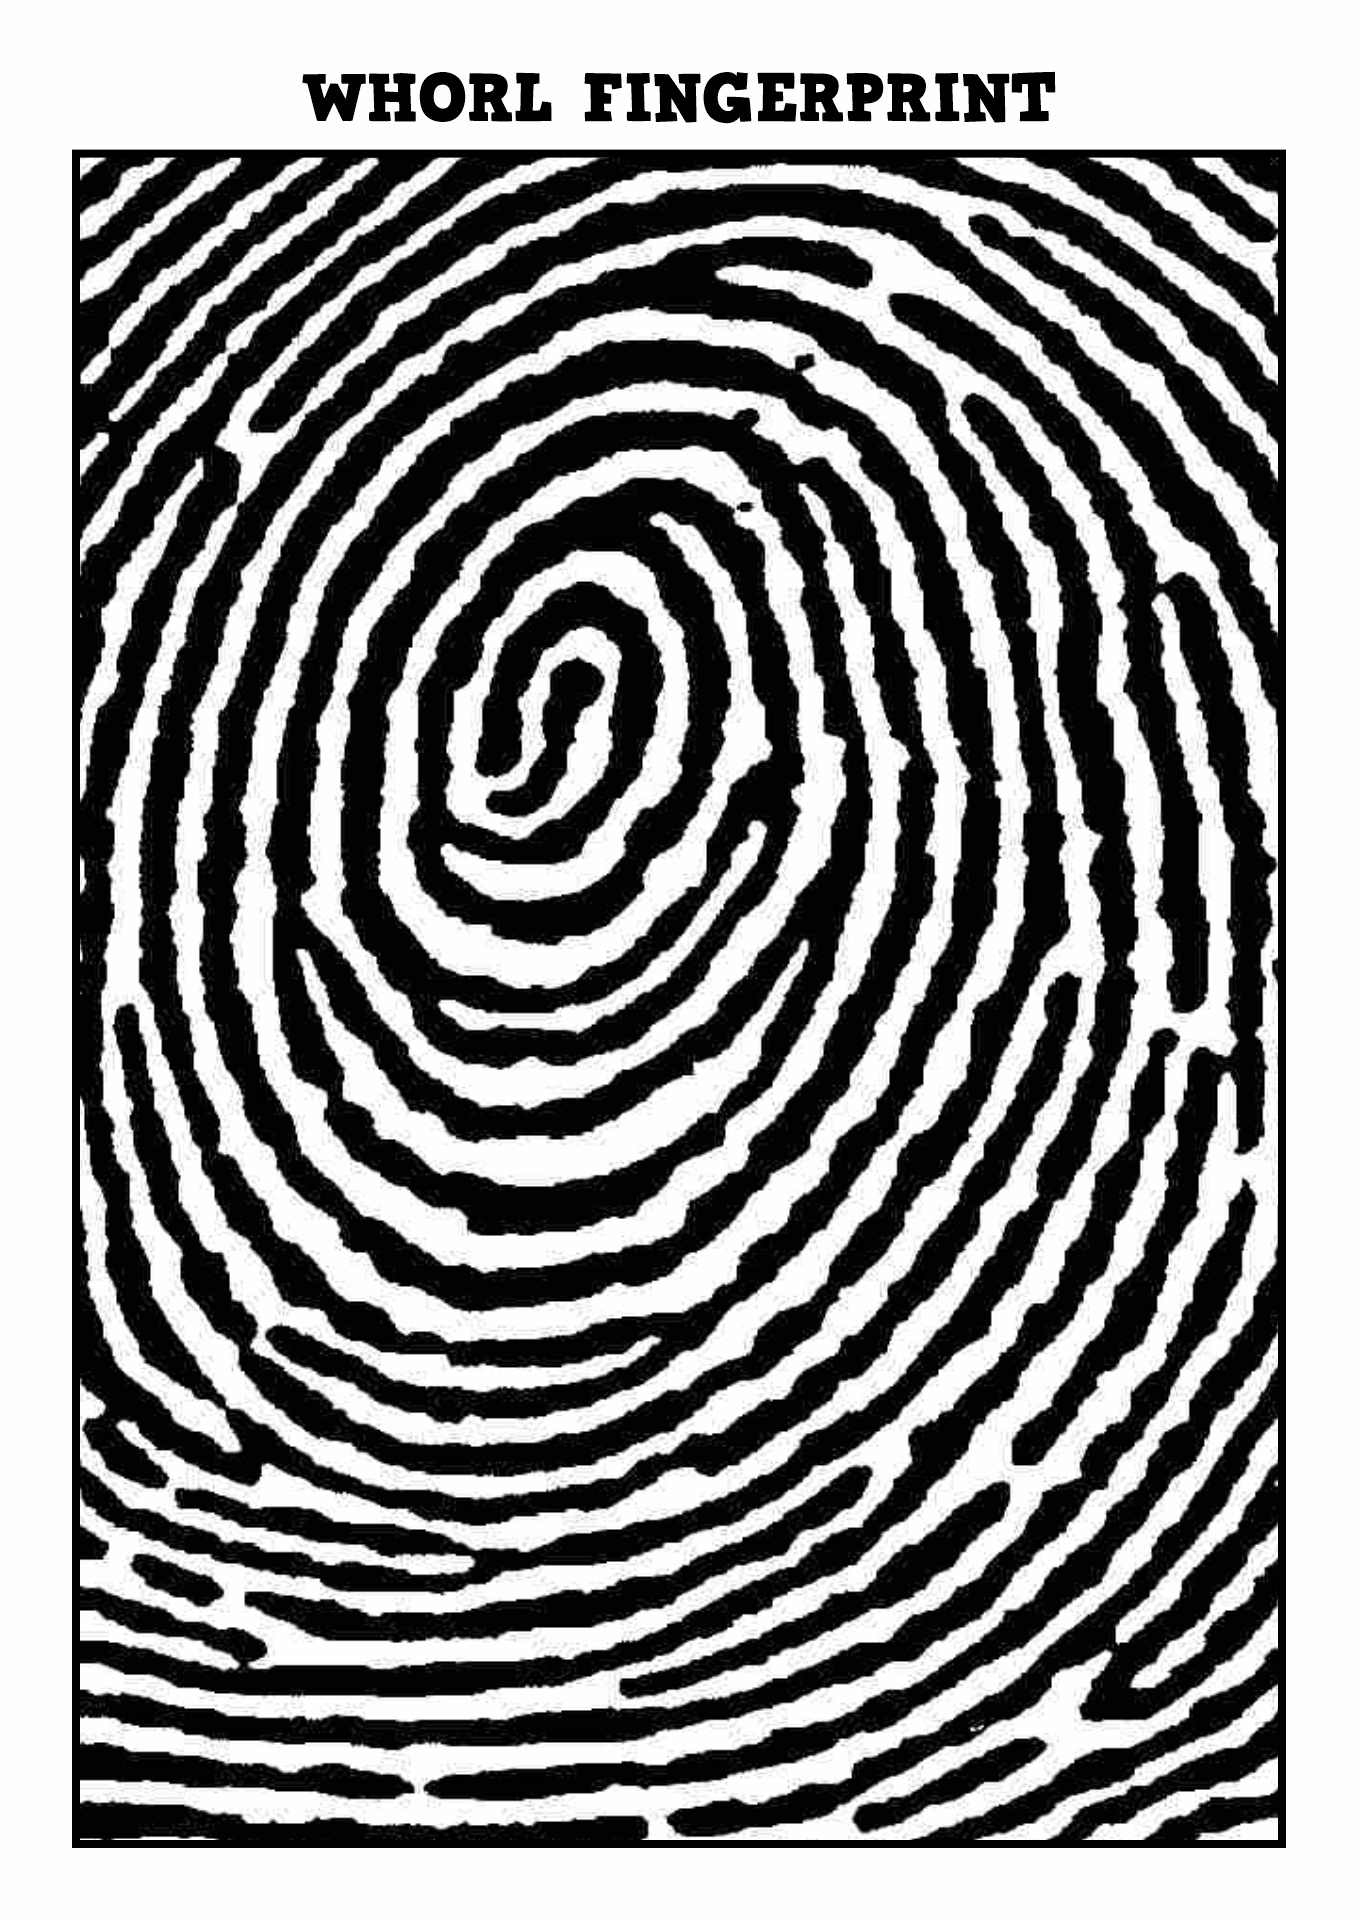 Whorl Fingerprint